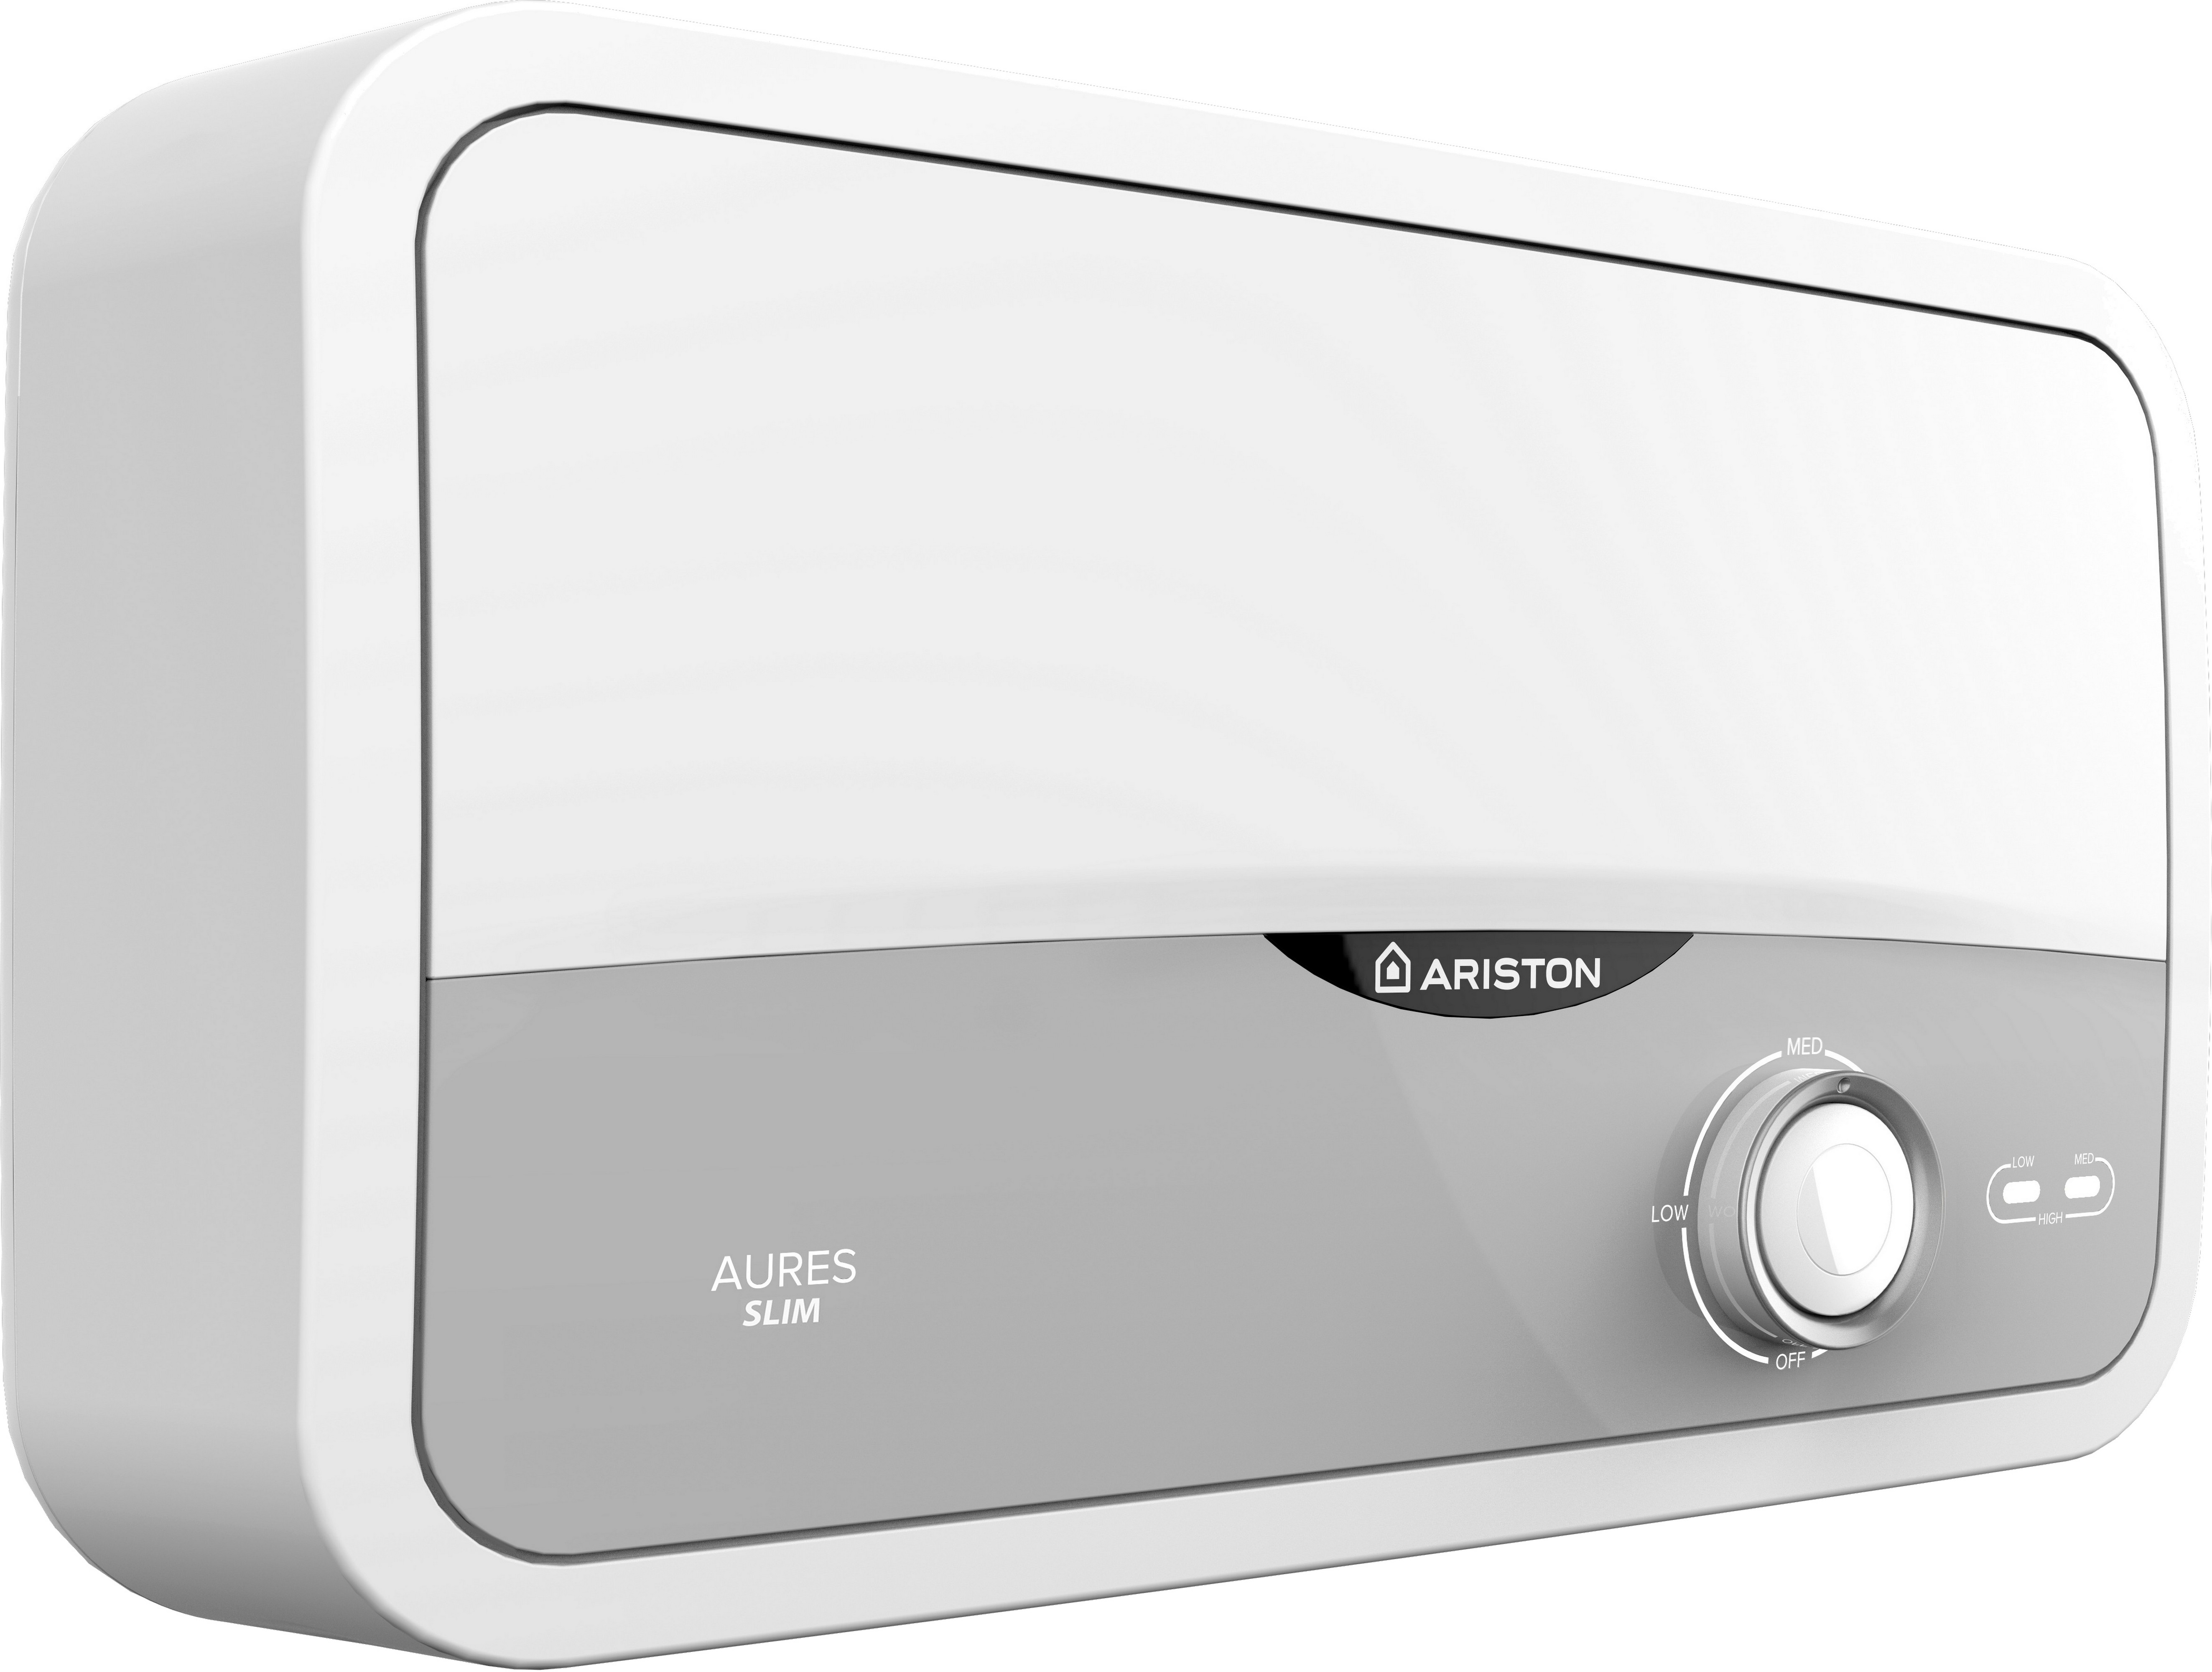 Проточный водонагреватель Ariston Aures S 3.5 COM PL цена 3200.00 грн - фотография 2